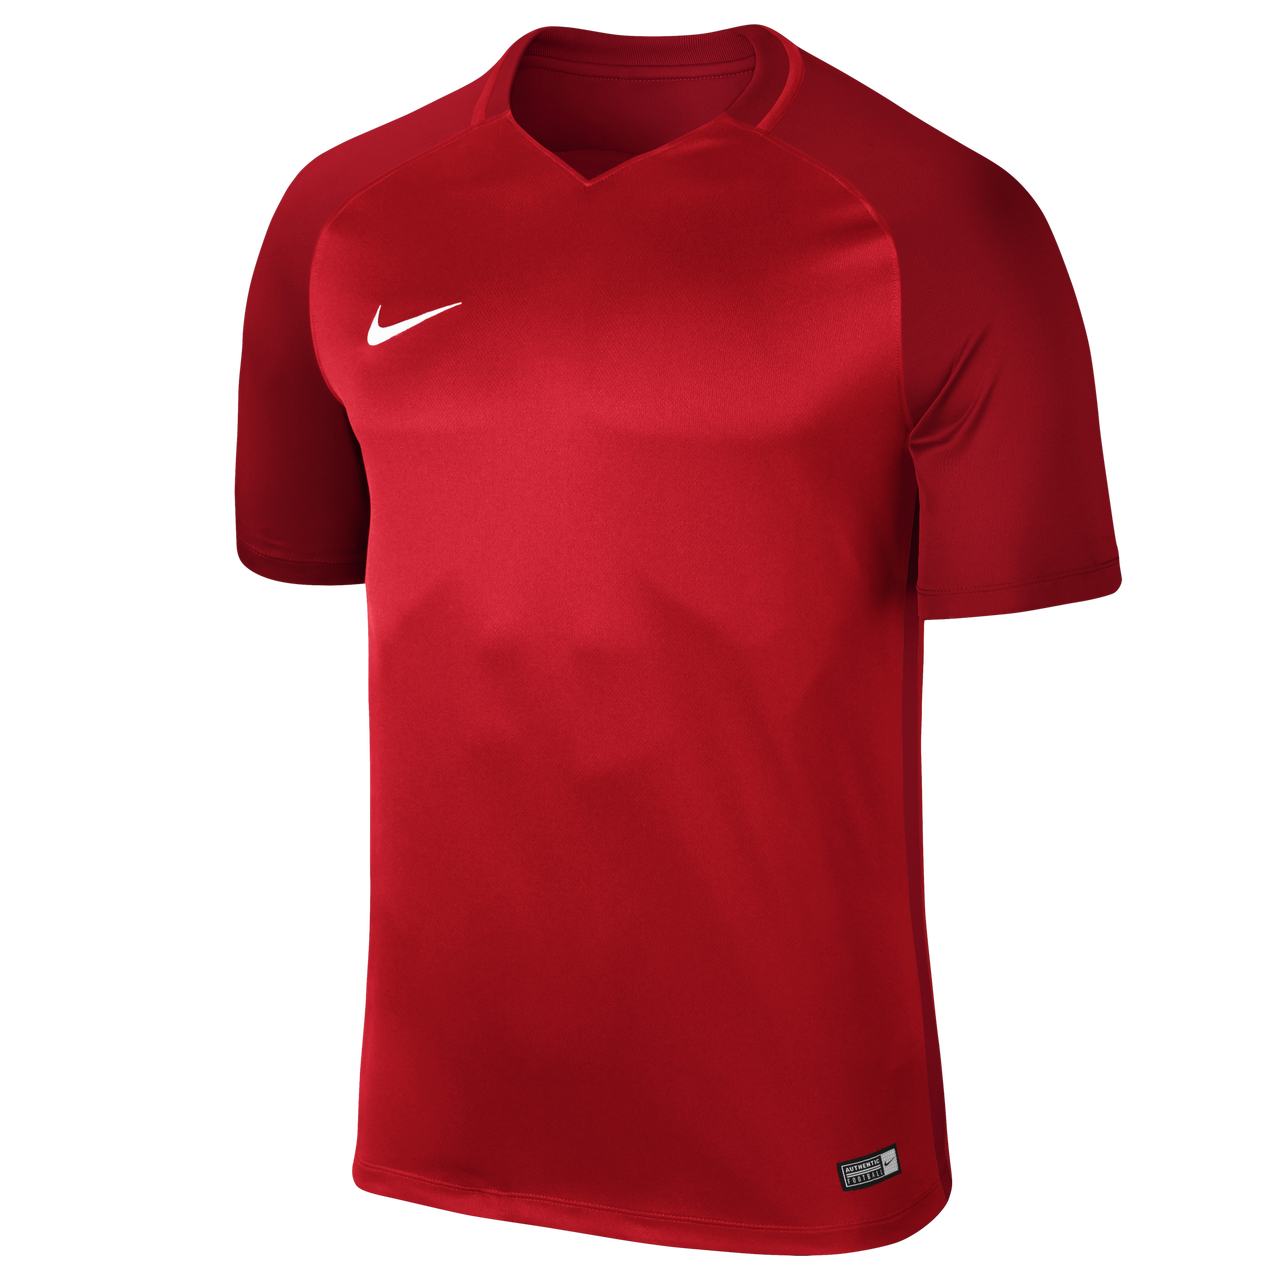 Nike Trophy III Jersey - Short Sleeve